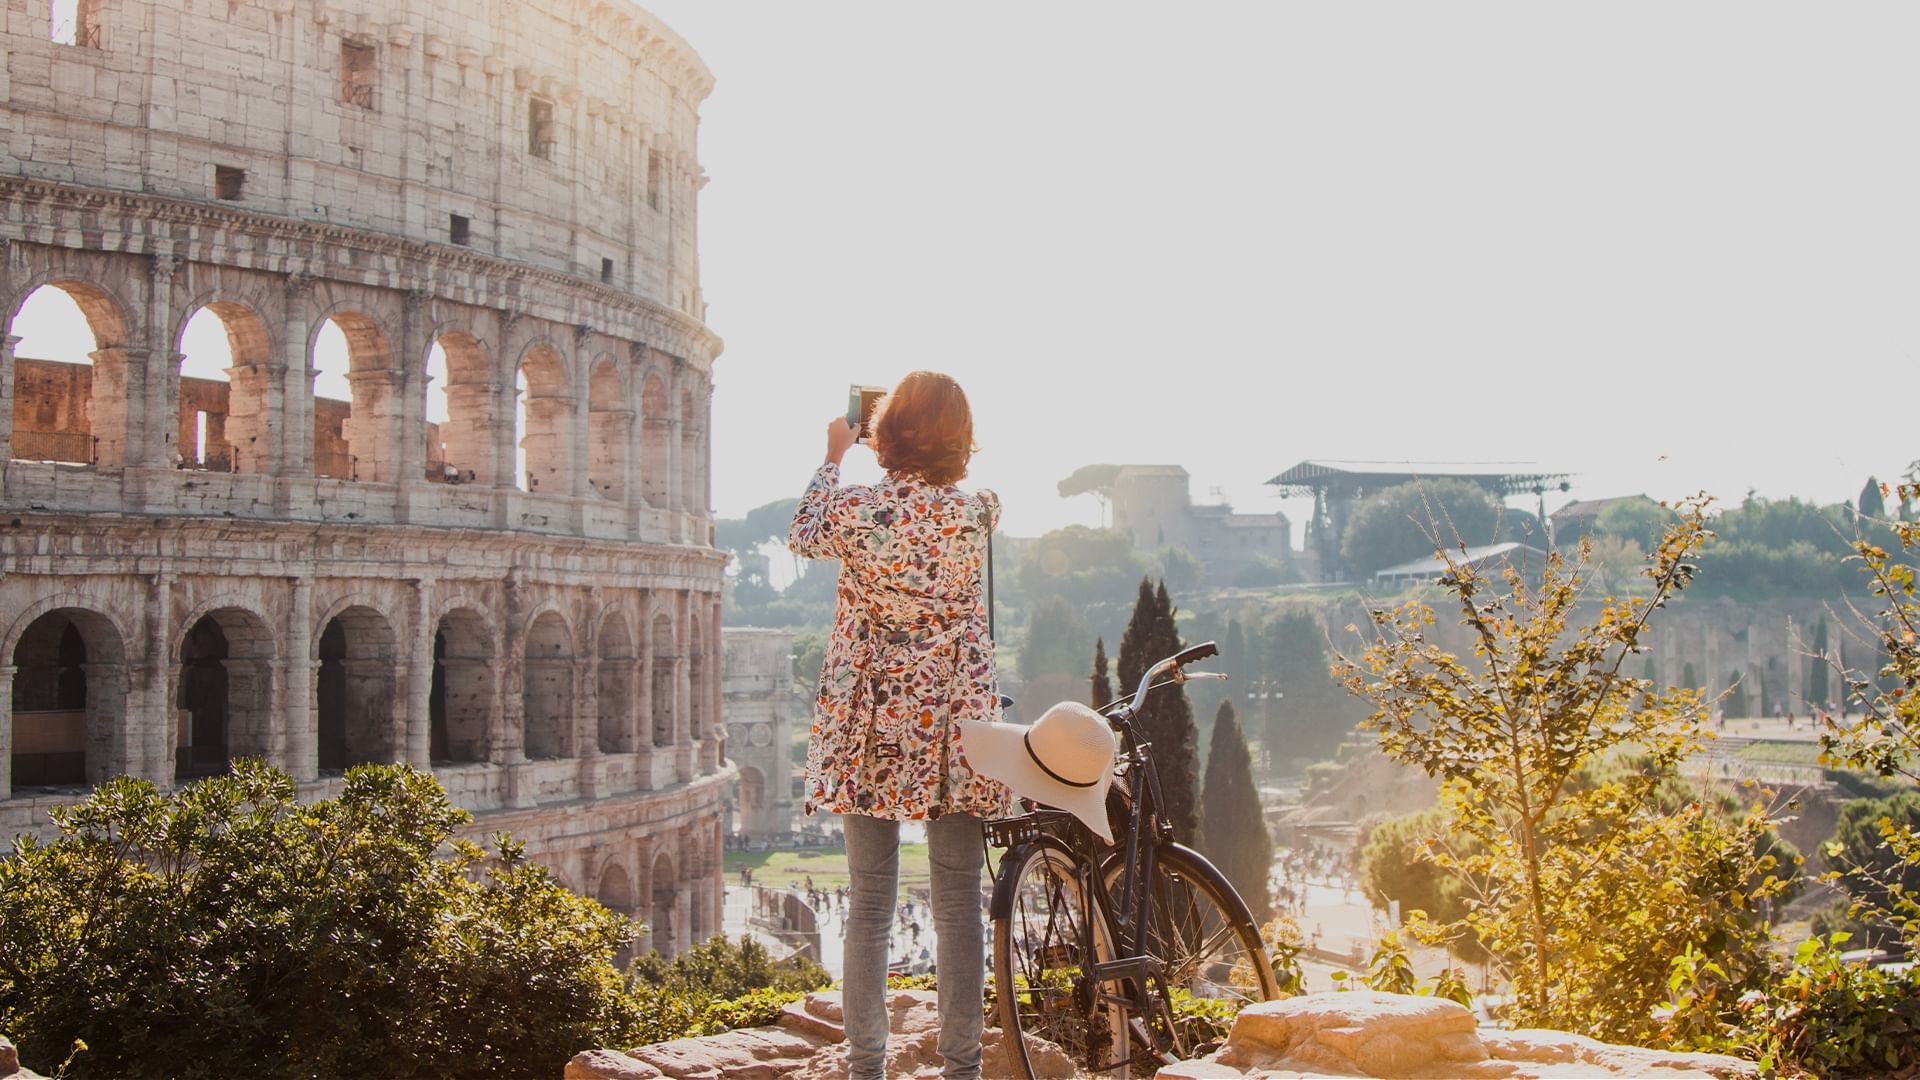  Quattro percorsi per scoprire Roma in bici quest’estate